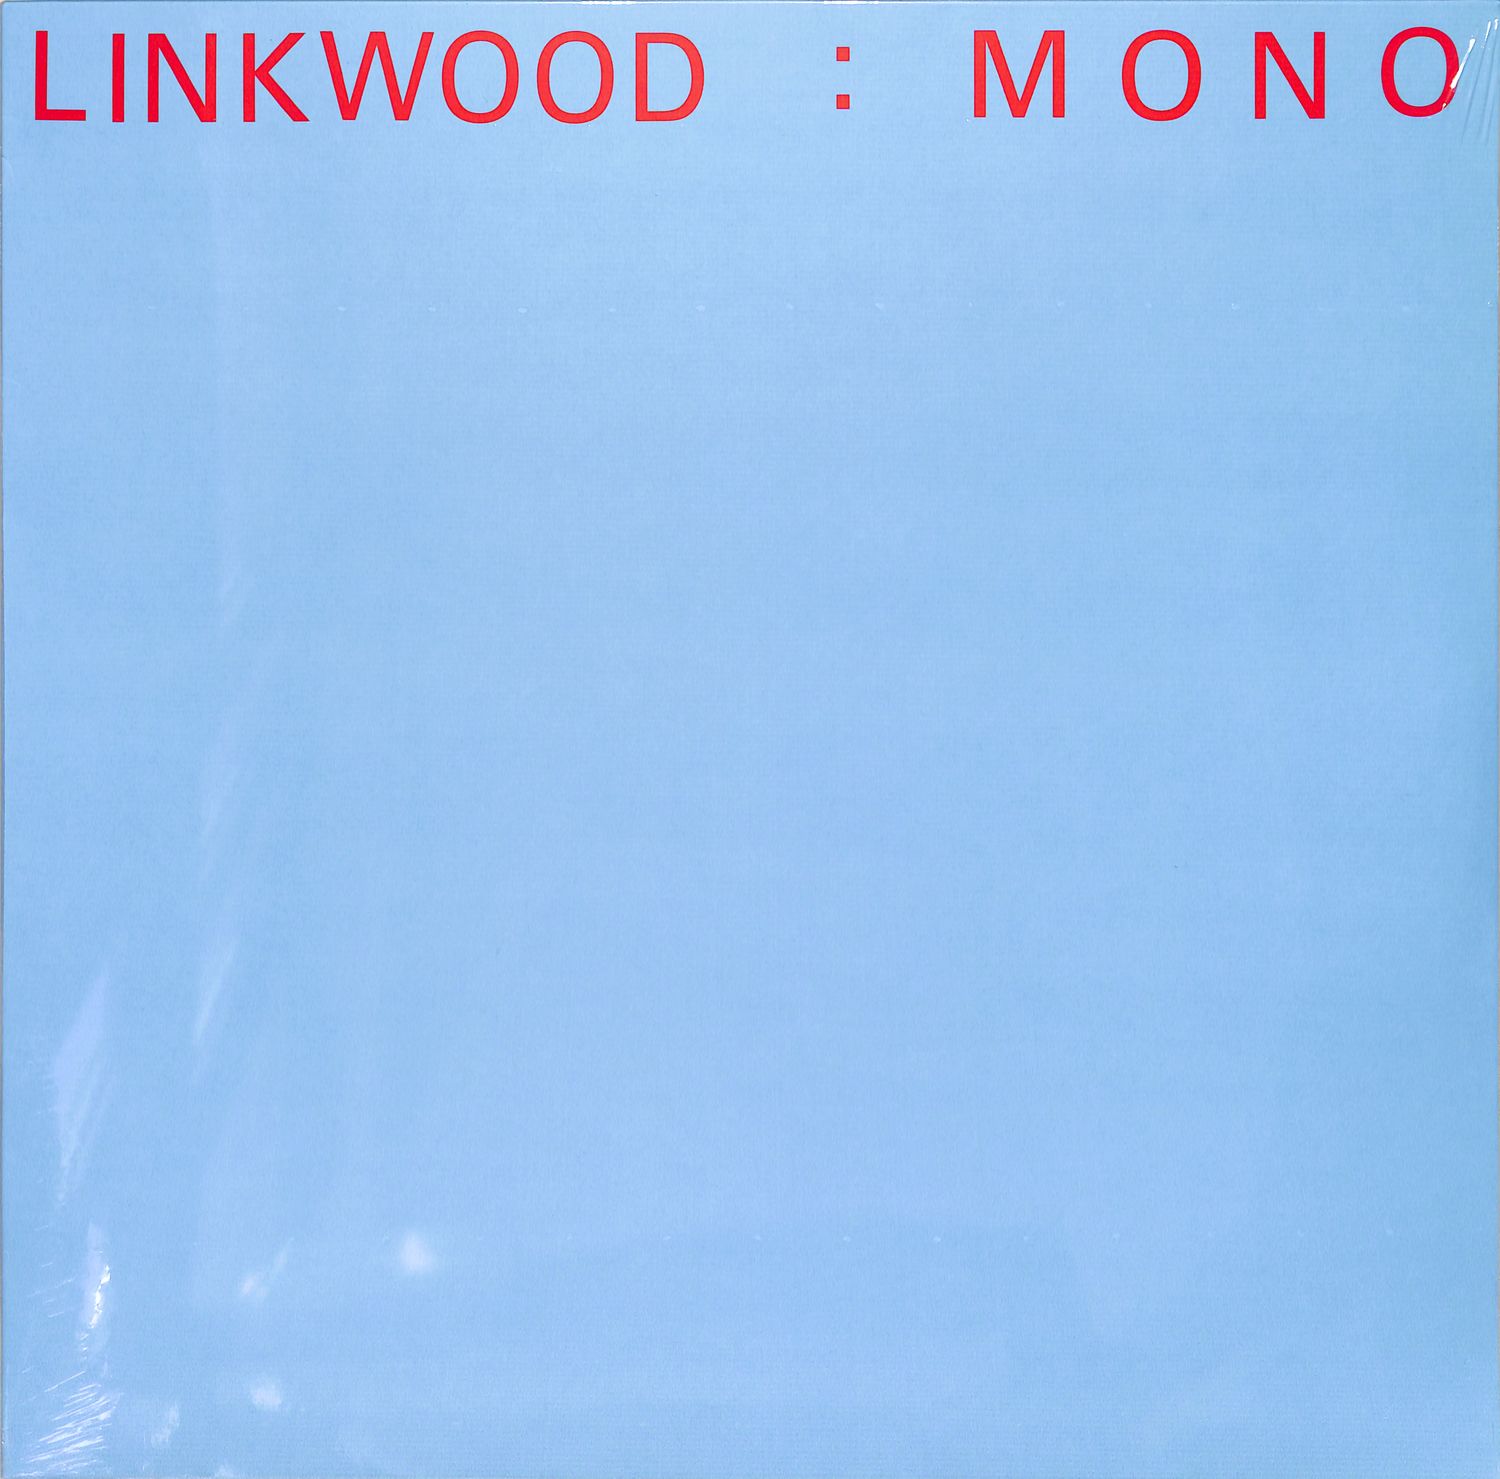 Linkwood - MONO 